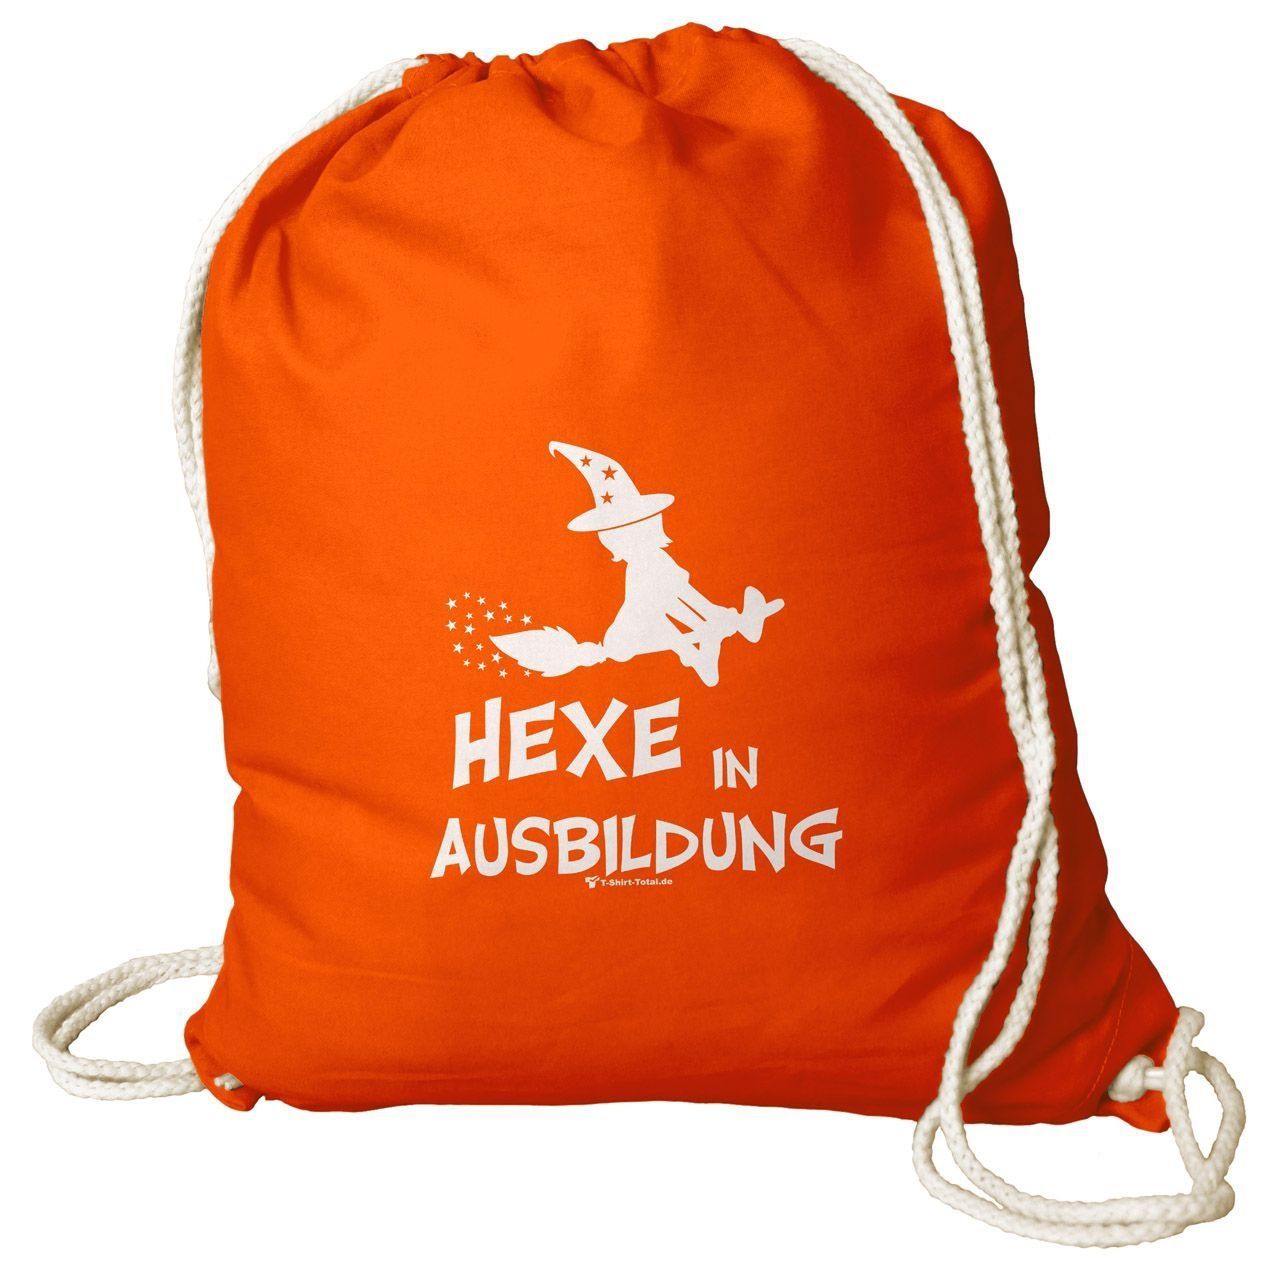 Hexe in Ausbildung Rucksack Beutel orange